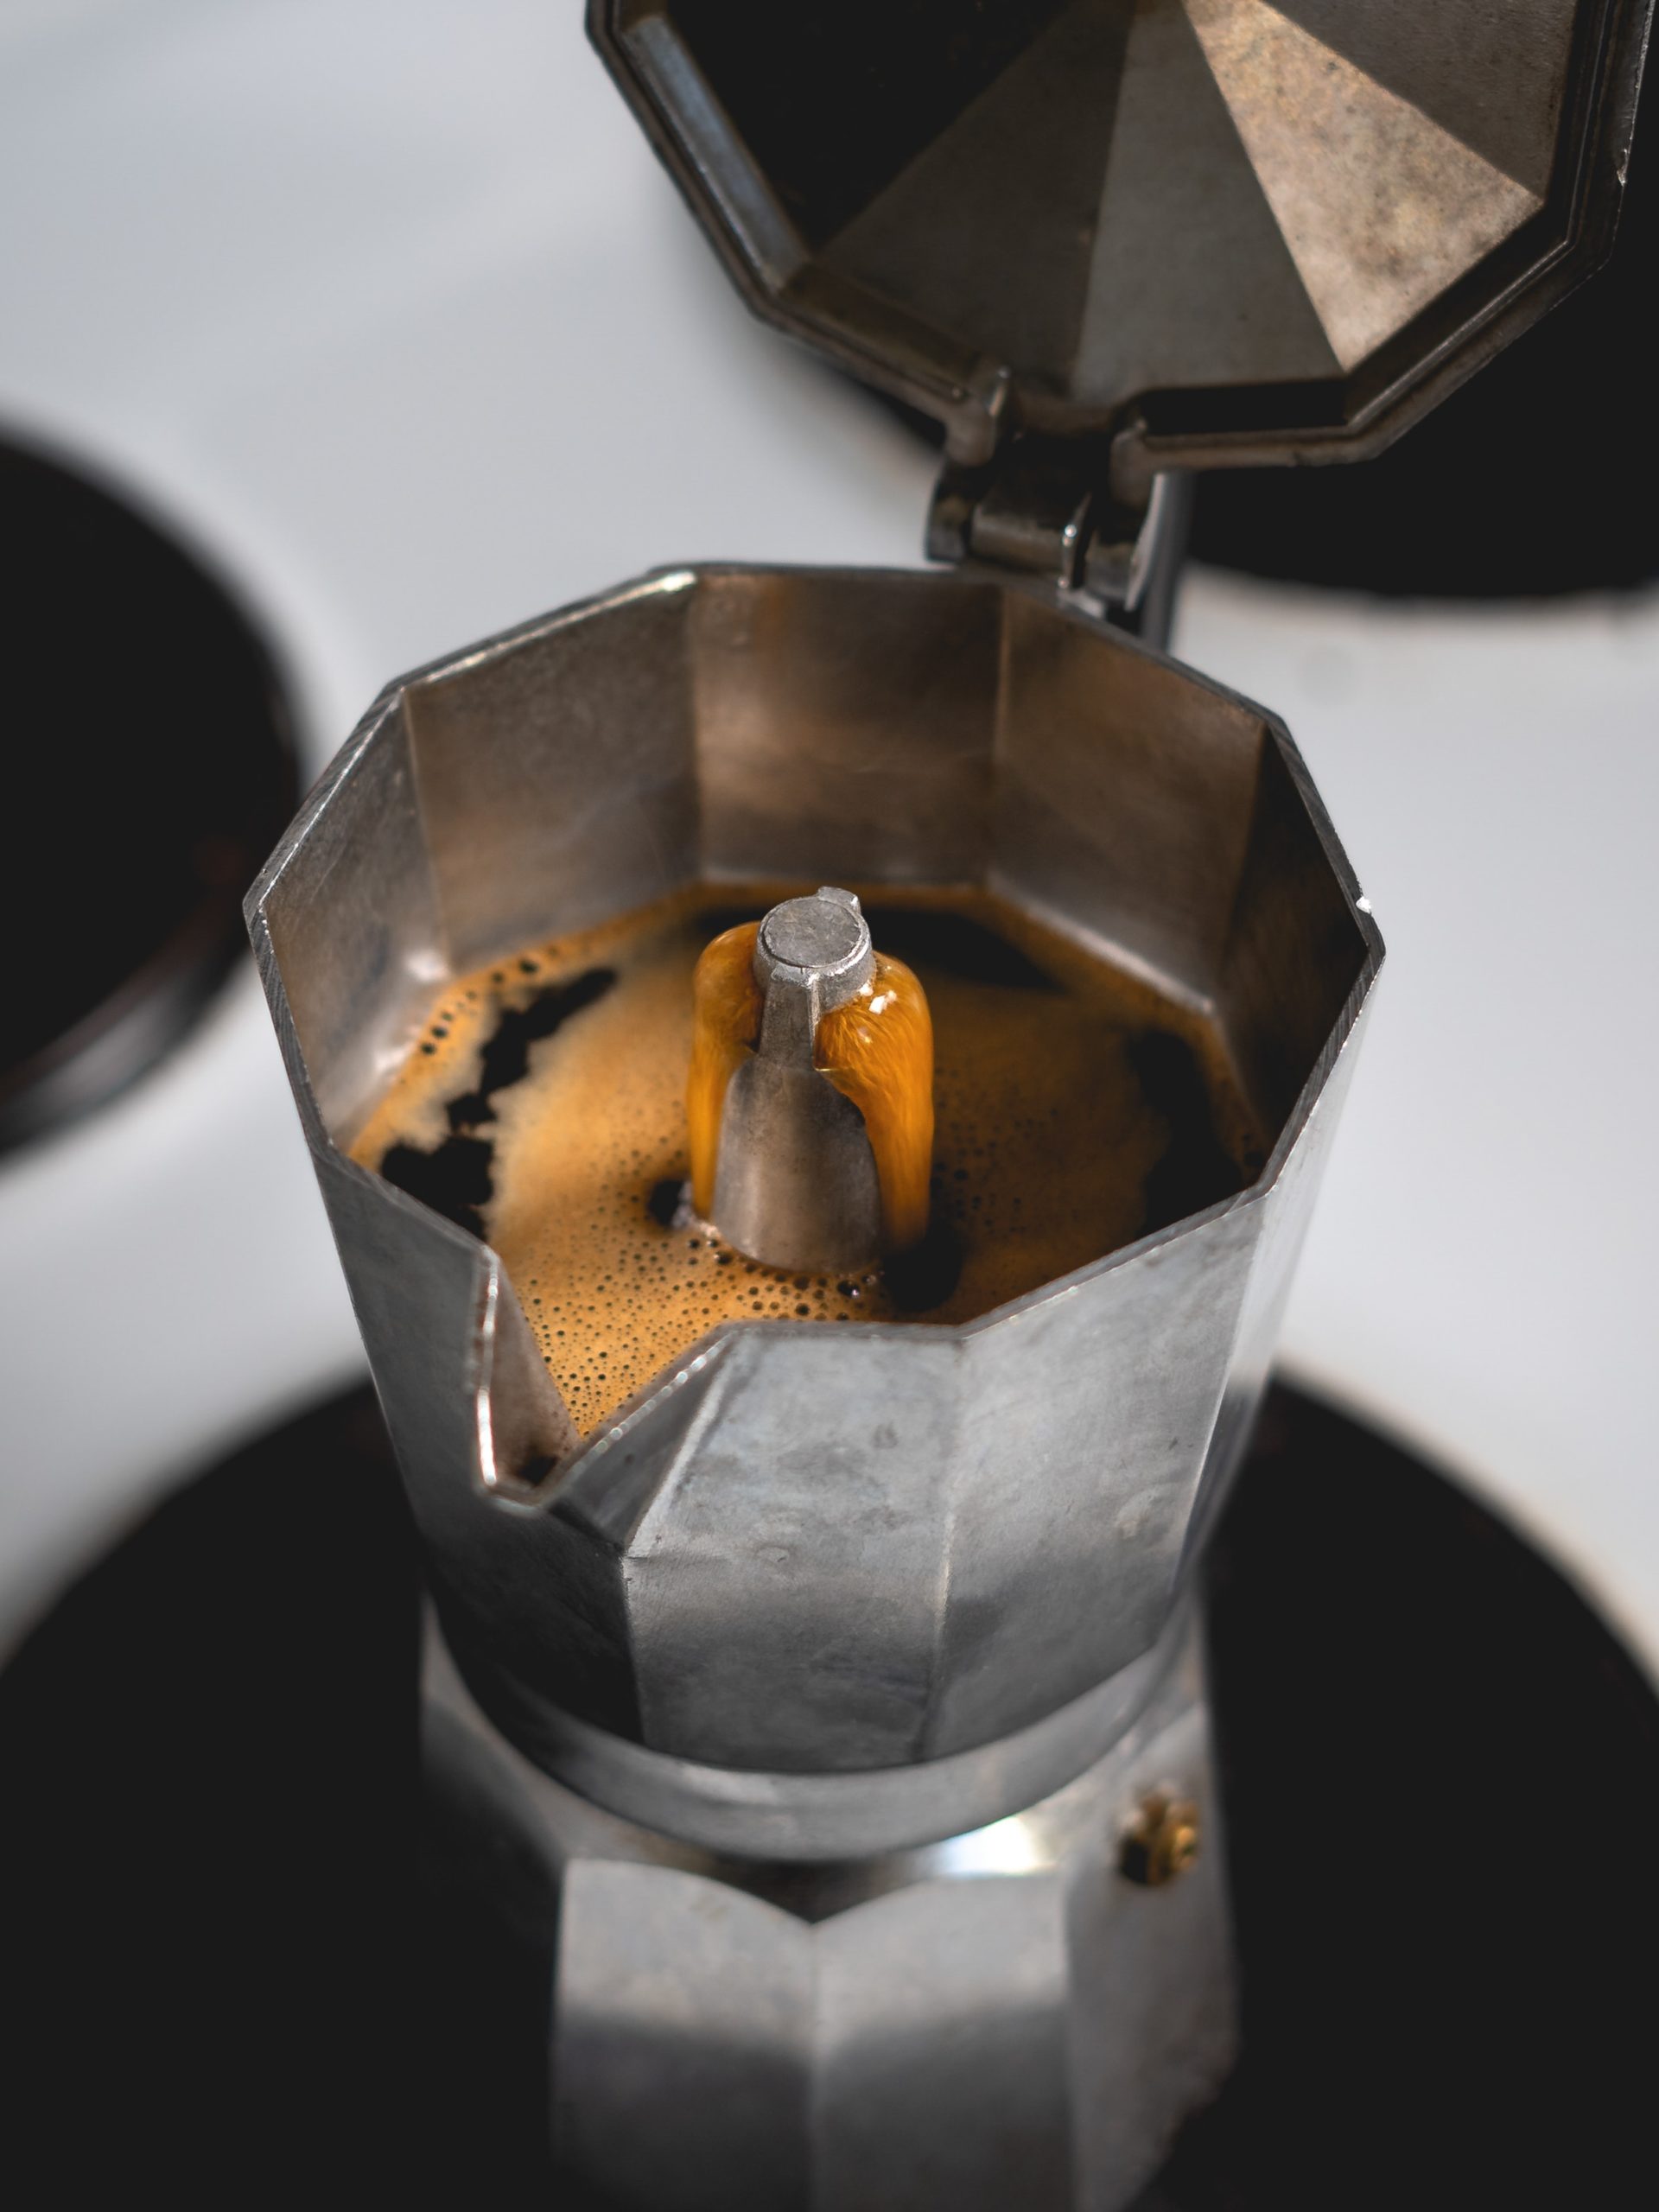 Coffee brewing in bialetti mokapot